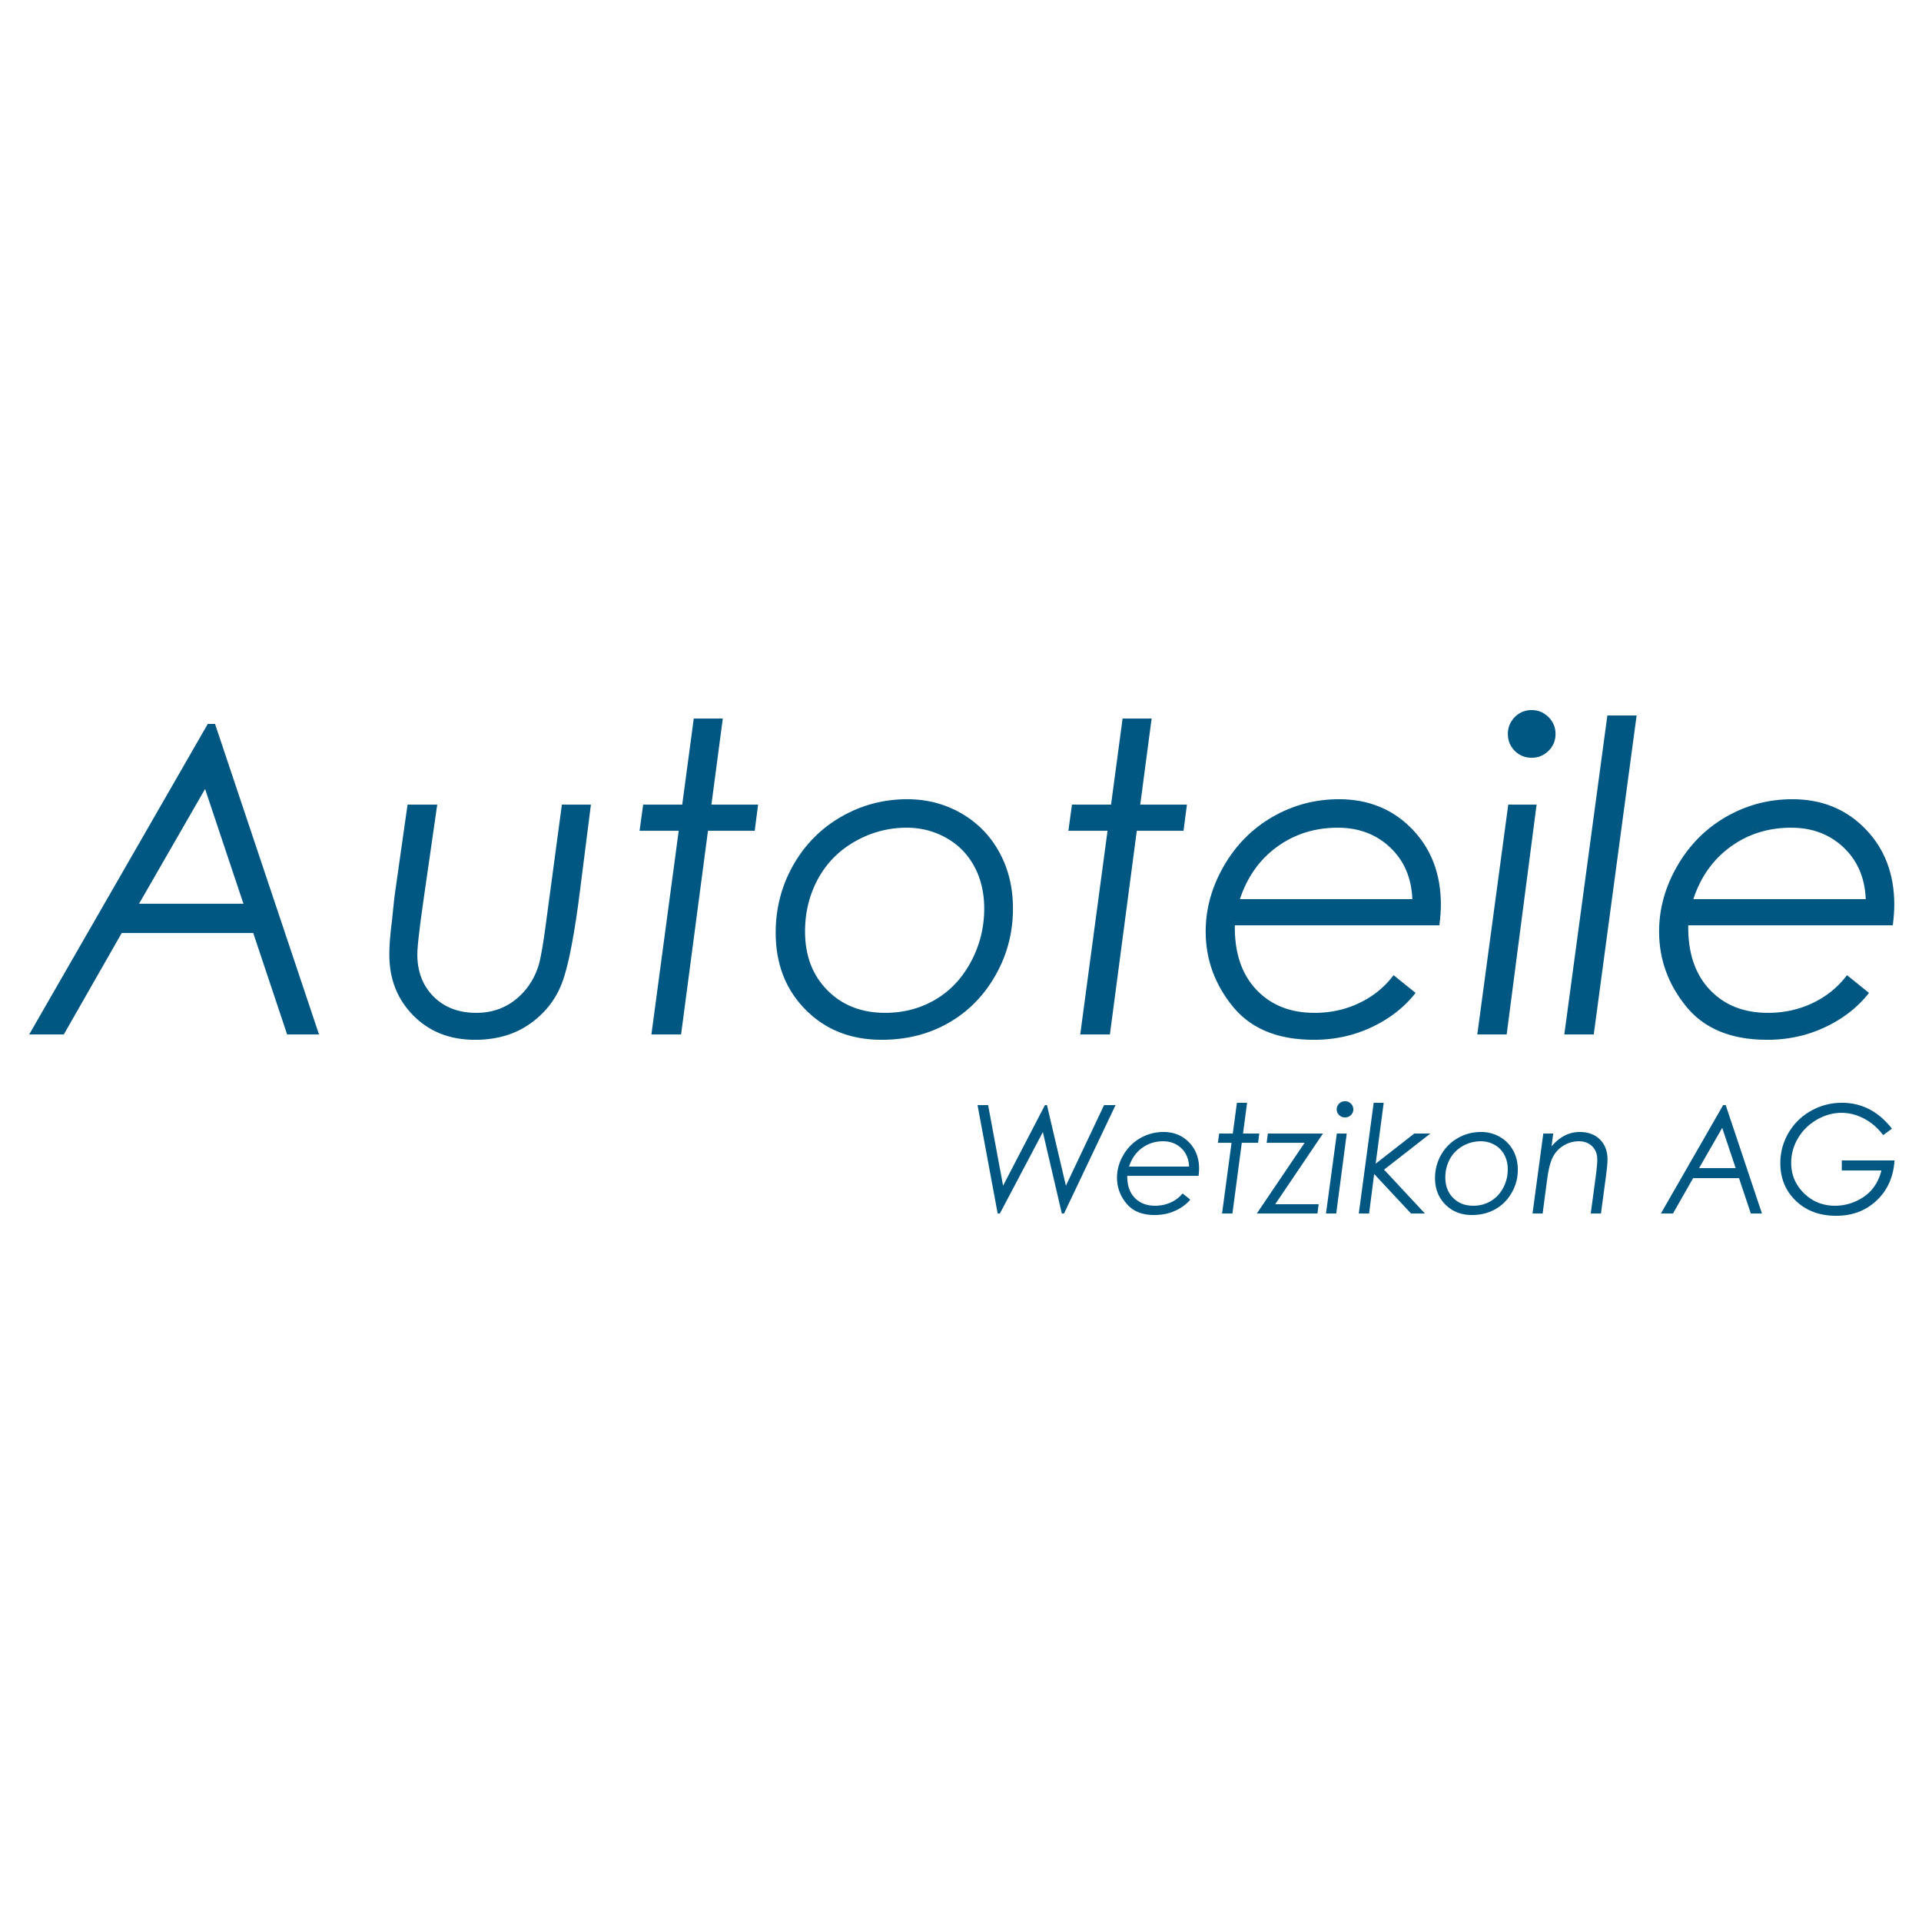 Autoteile Wetzikon AG Logo